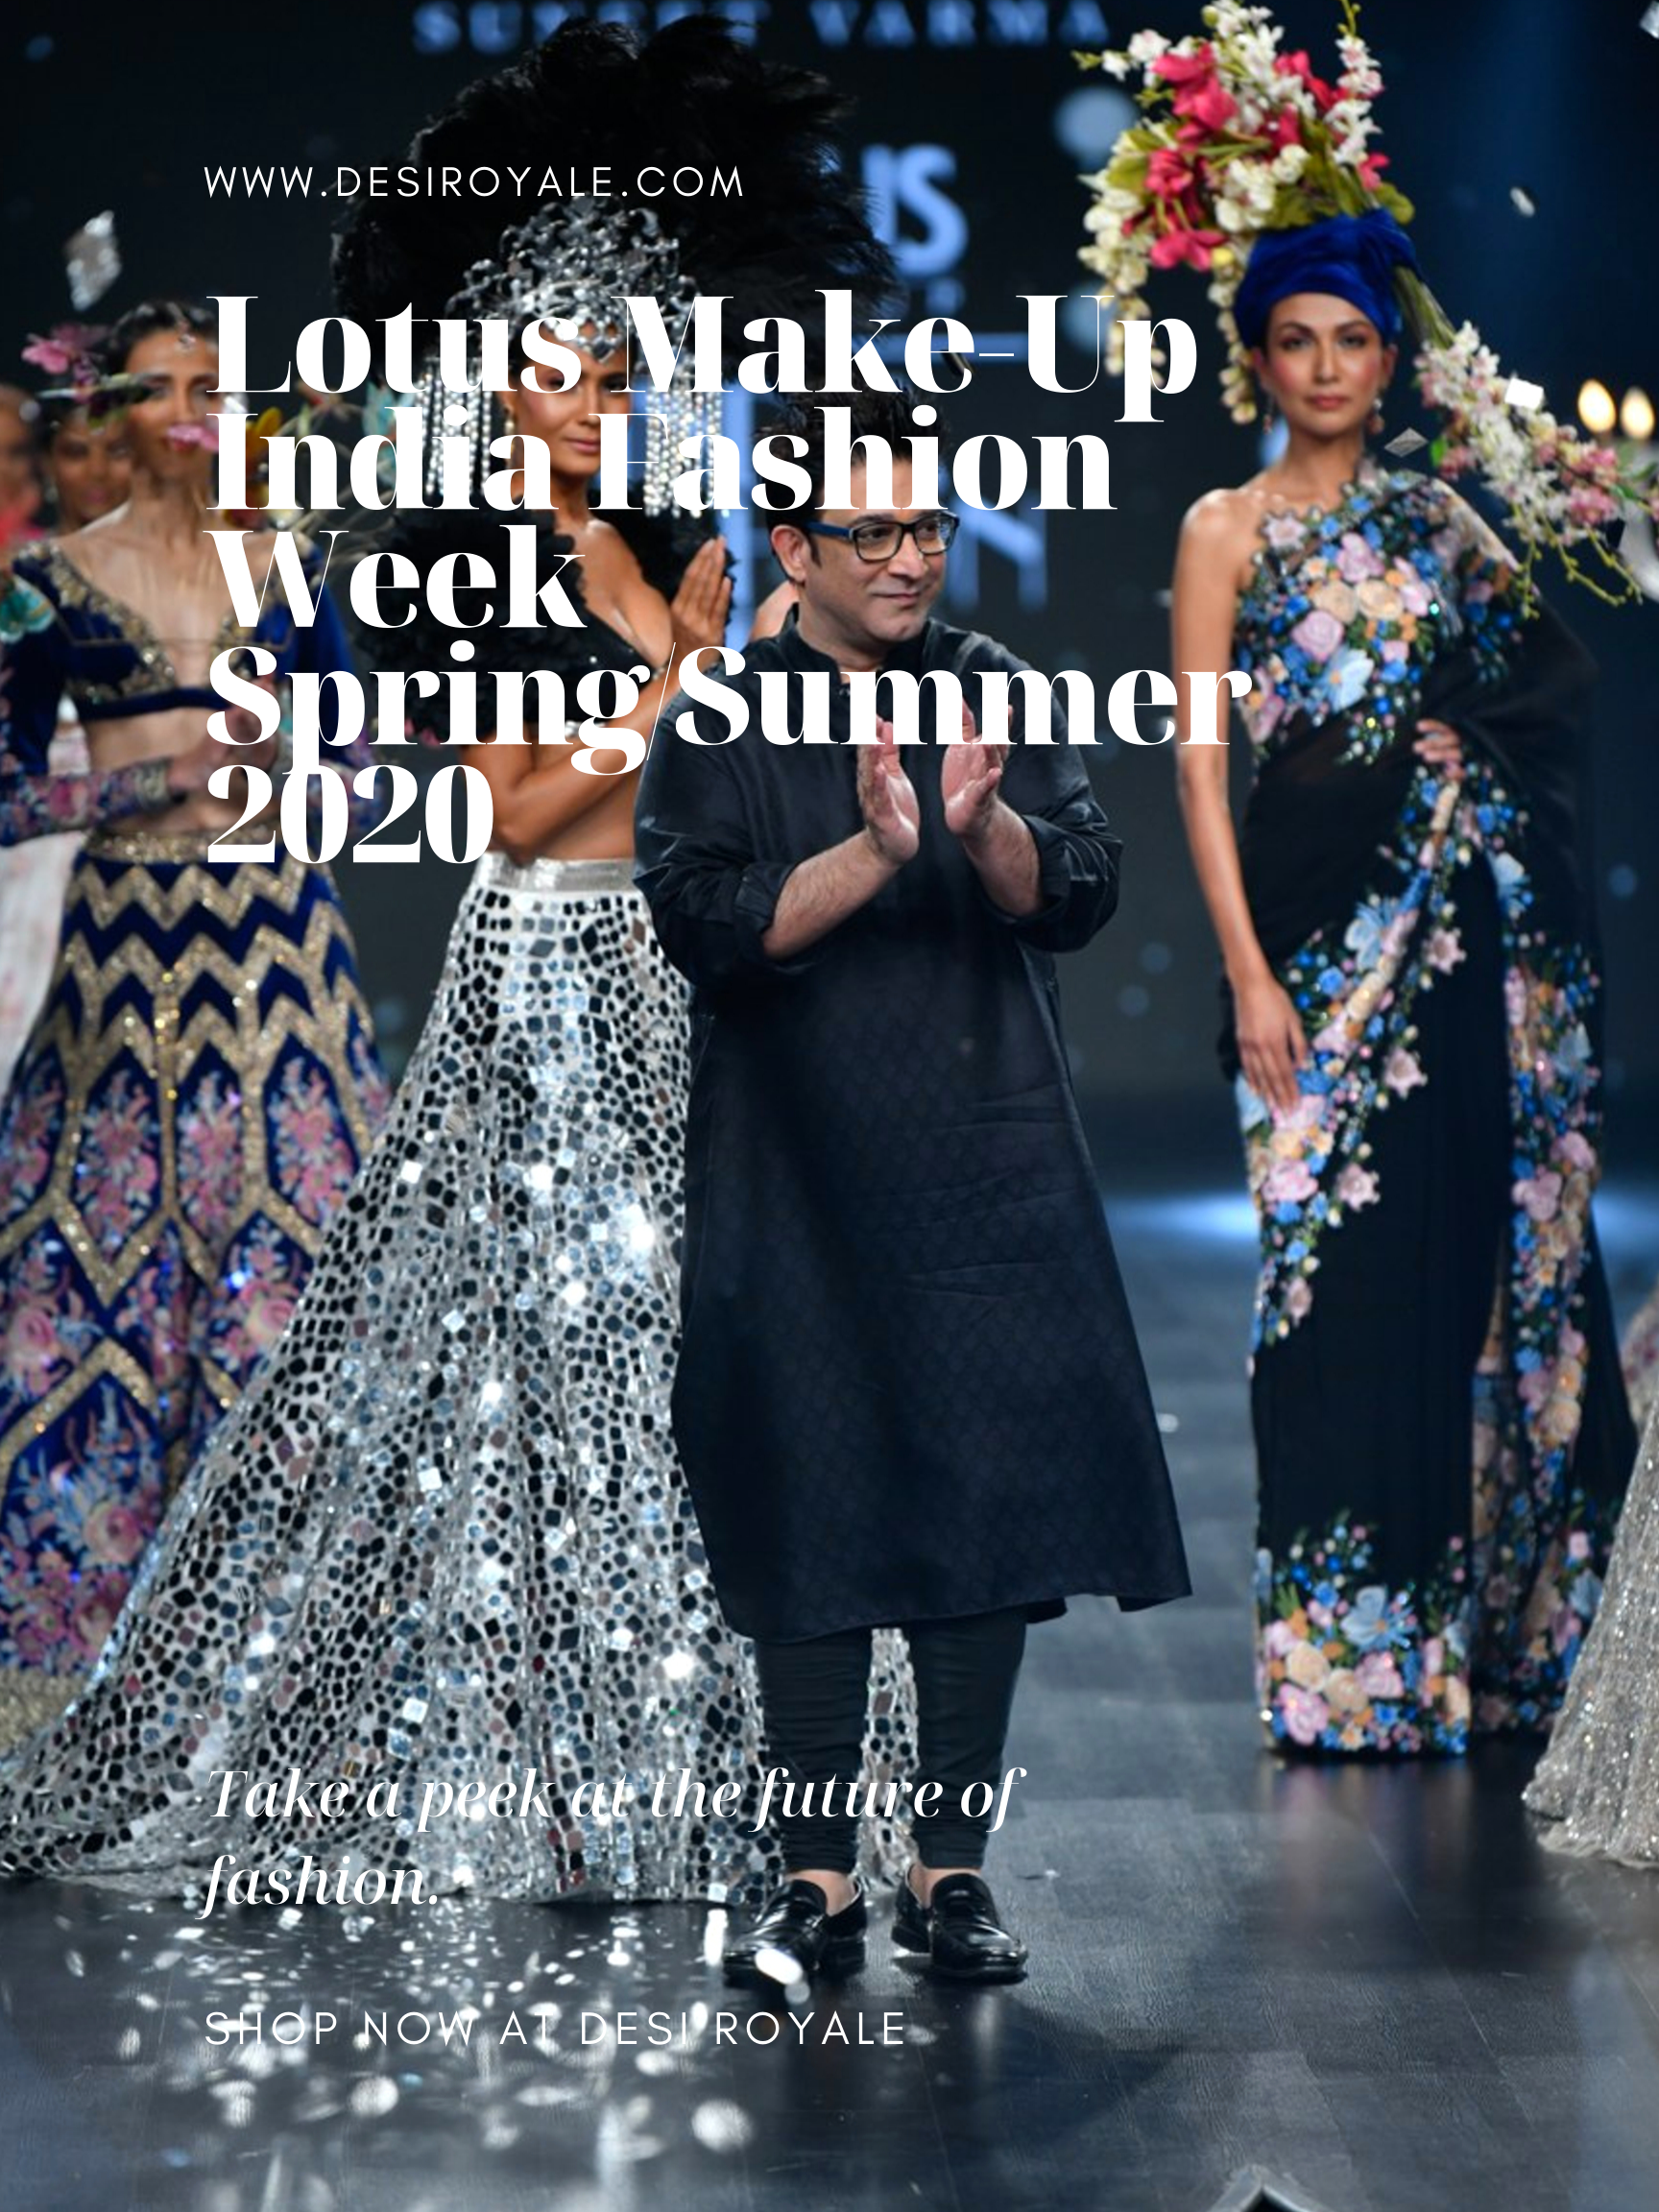 Lotus Make-Up India Fashion Week spring/summer 2020 - Suneet Varma